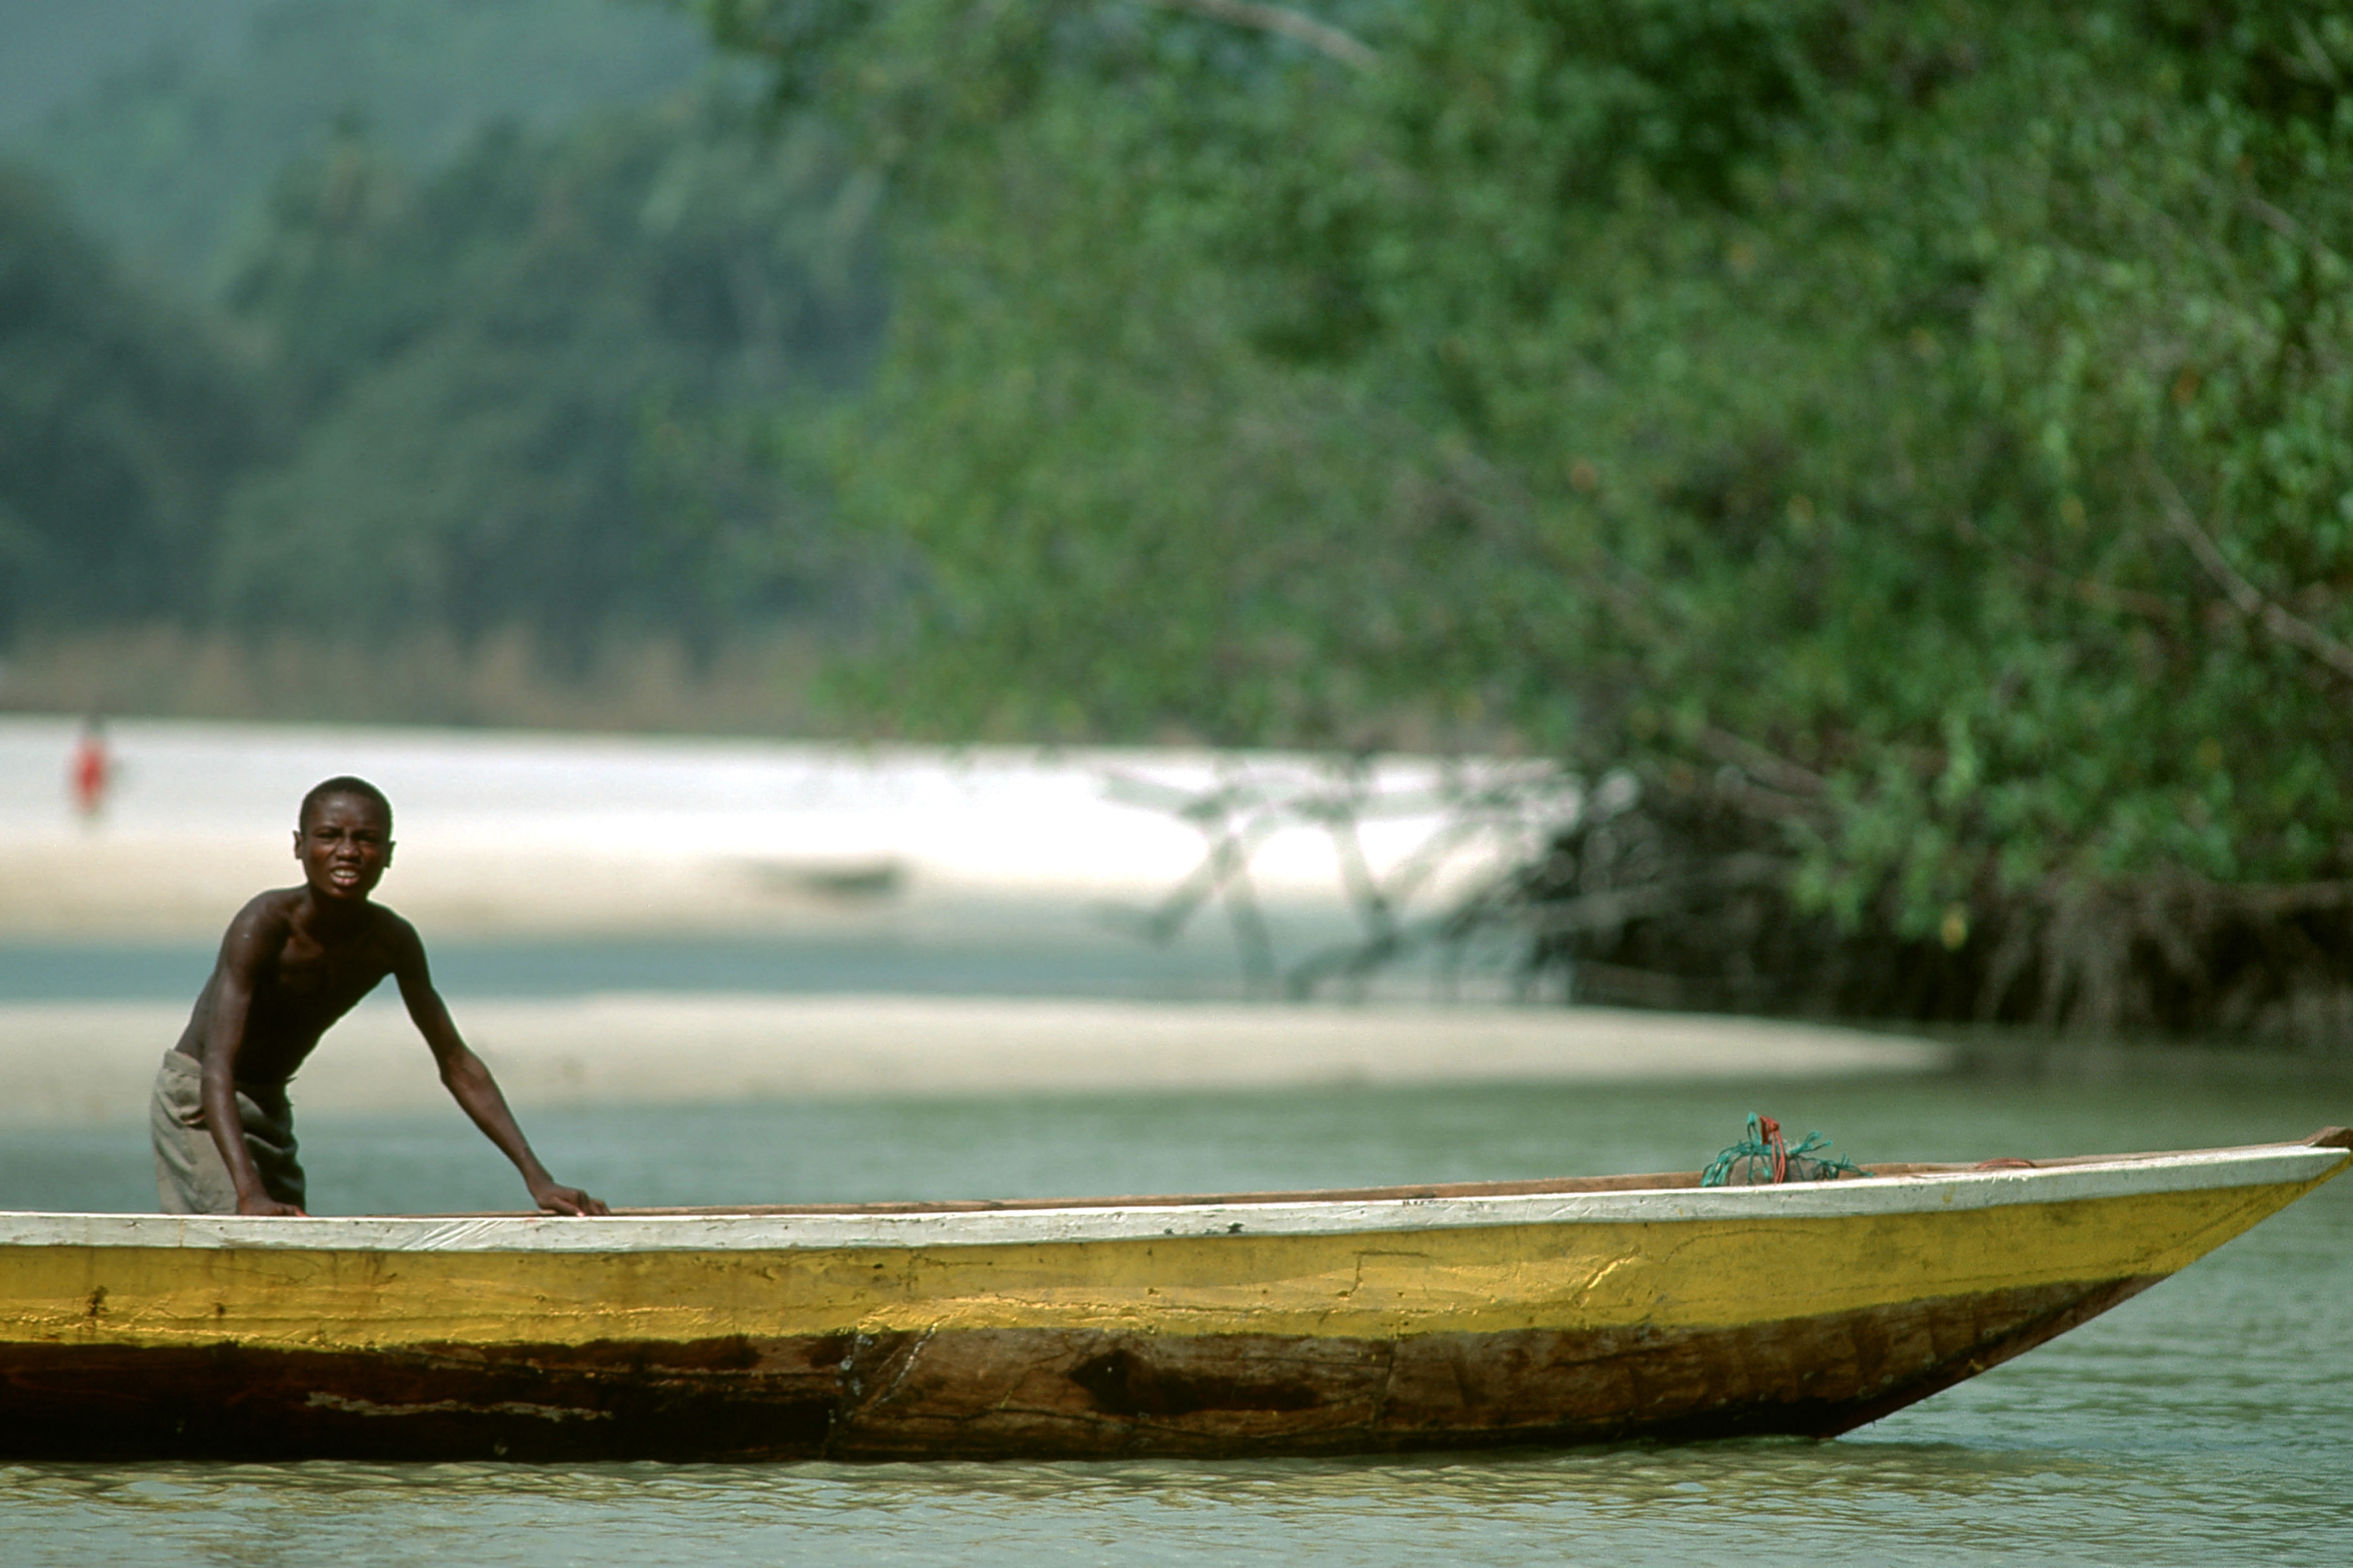 Boy fishing on canoe, Sierra Leone